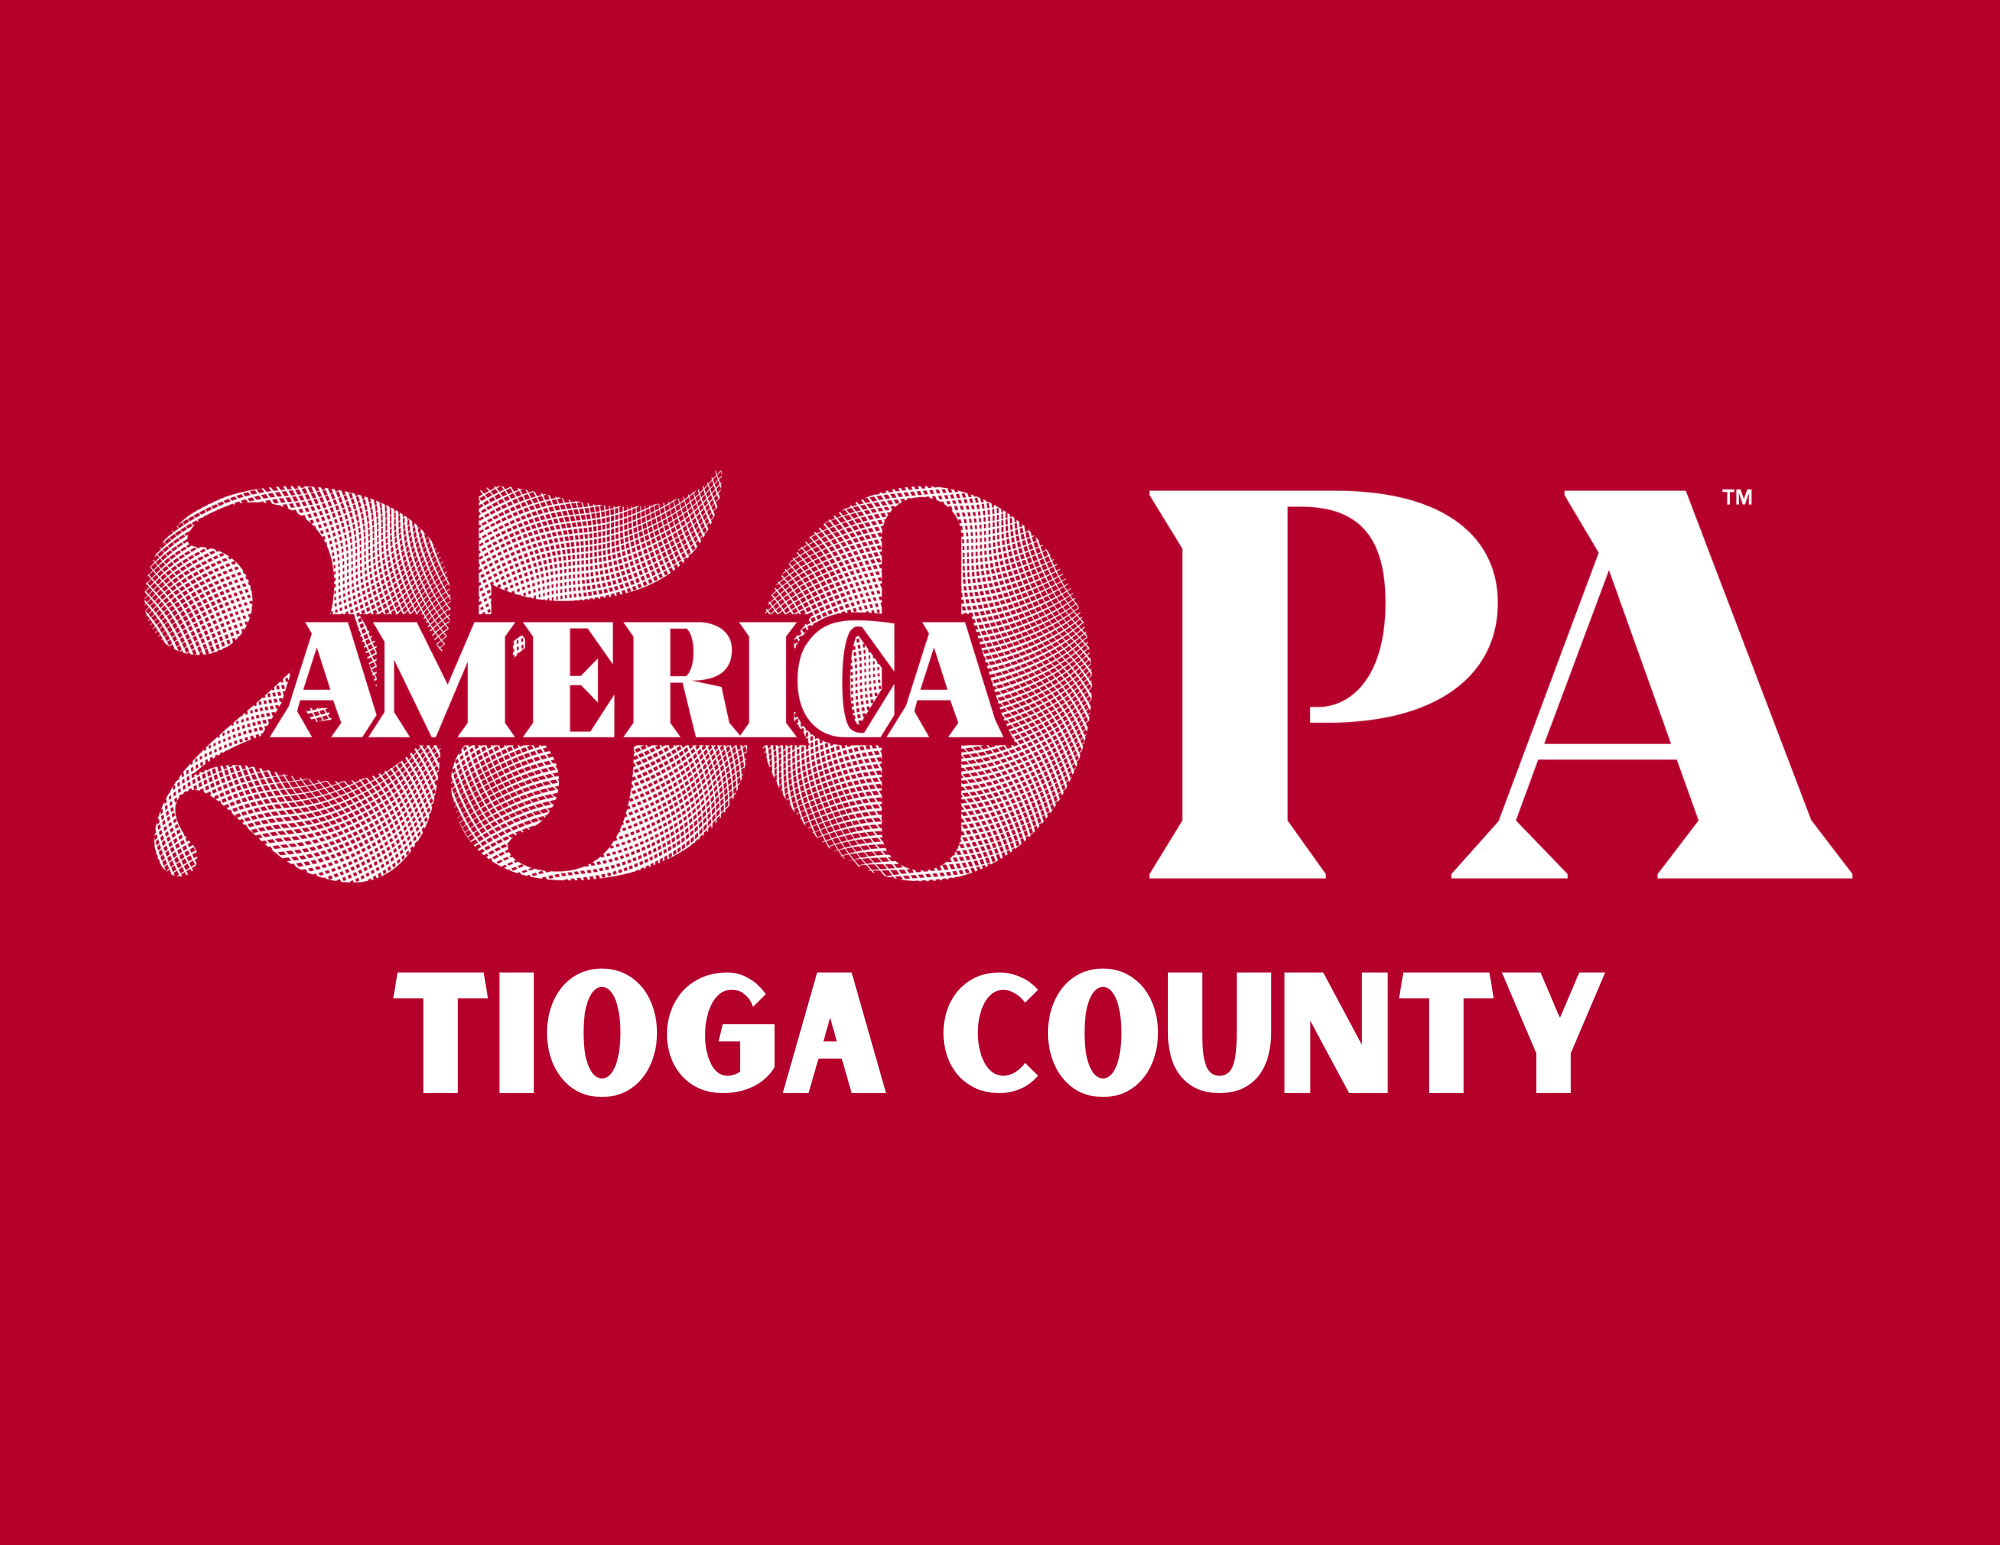 250 America Tioga County